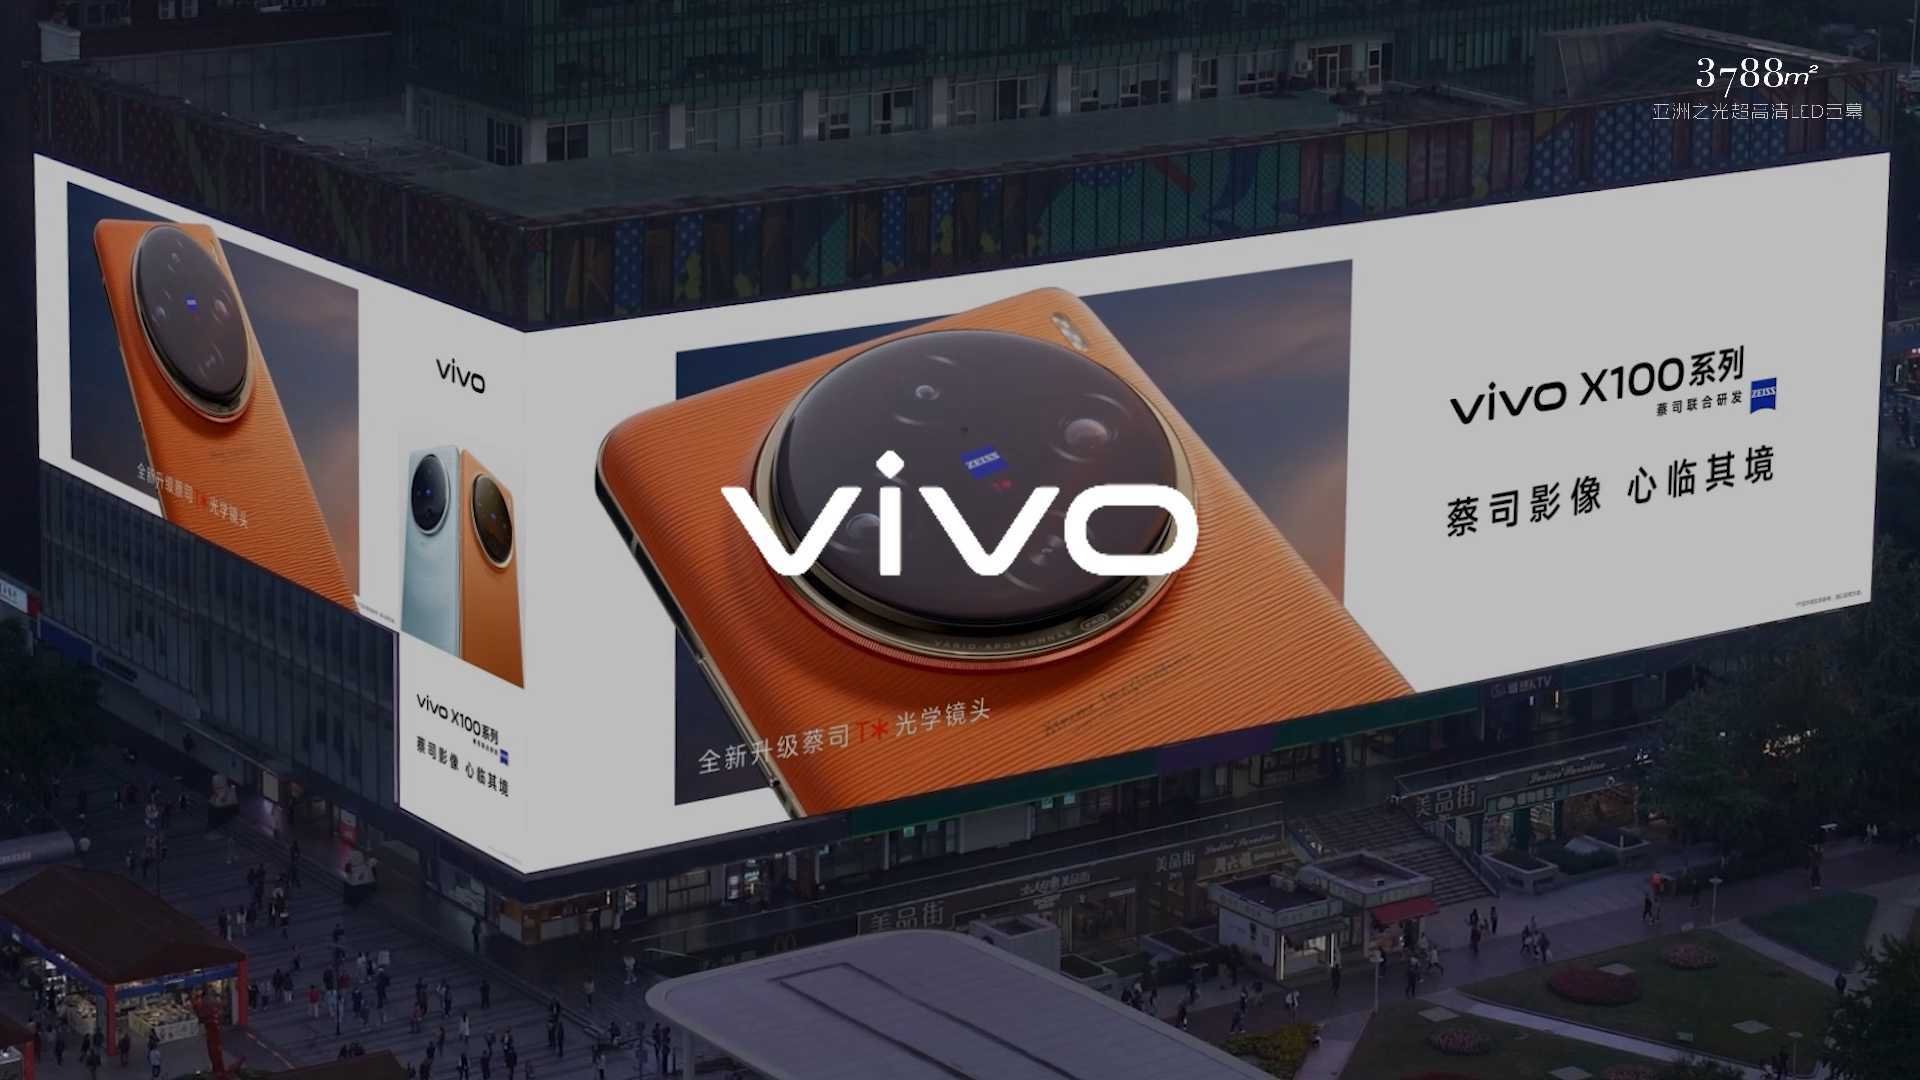 vivoX100系列全新设计惊艳亮相3788“亚洲之光”地标巨幕！